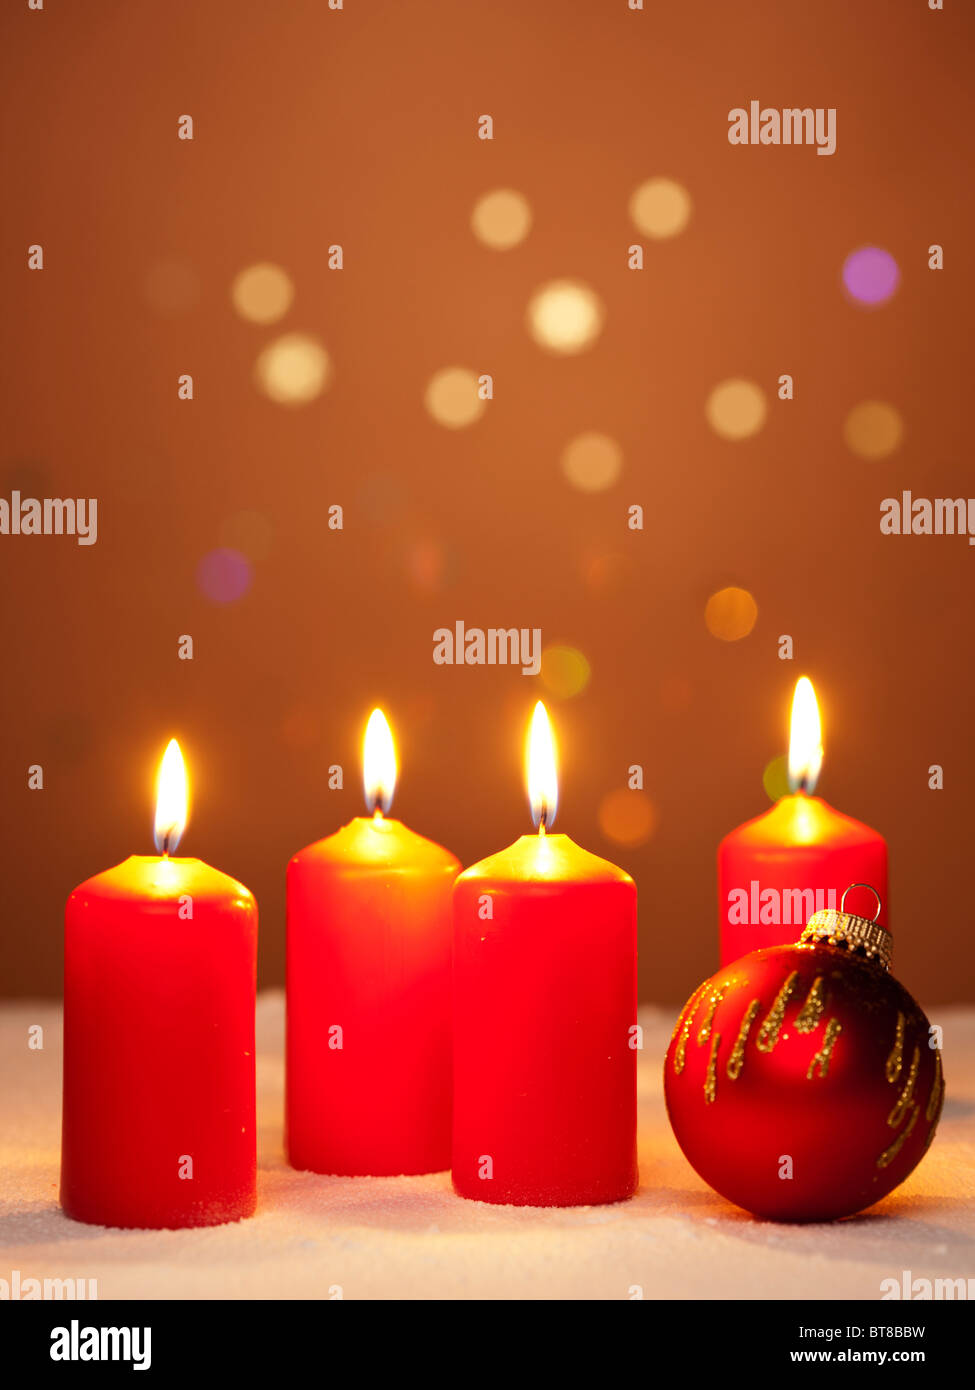 Cuatro quemando velas de adviento y un adorno de Navidad roja Foto de stock